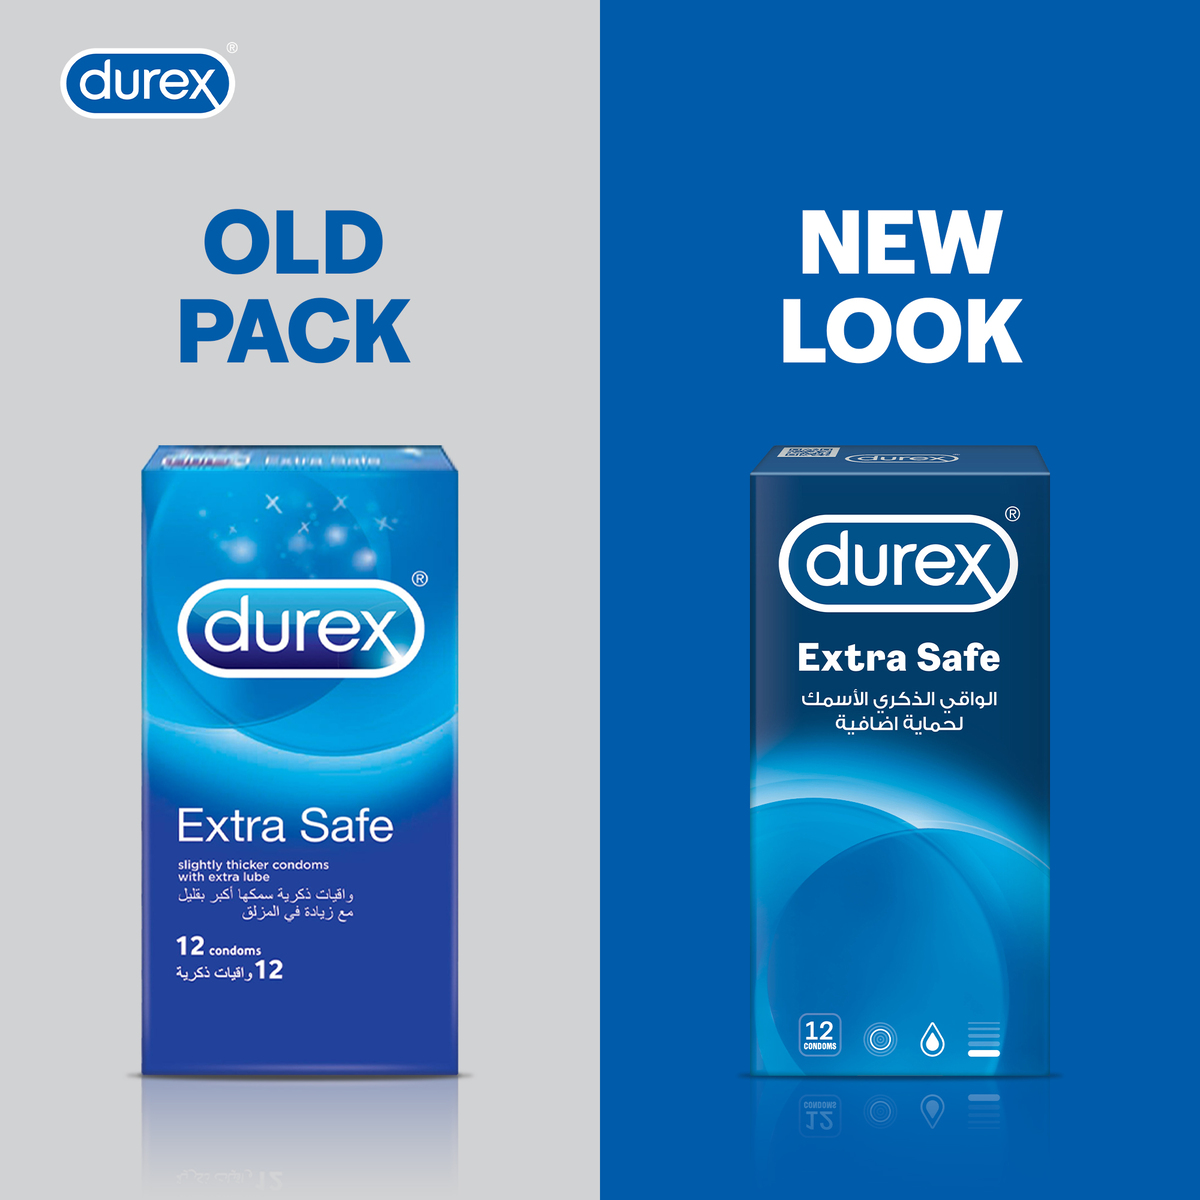 Durex Extra Safe Condoms 12pcs